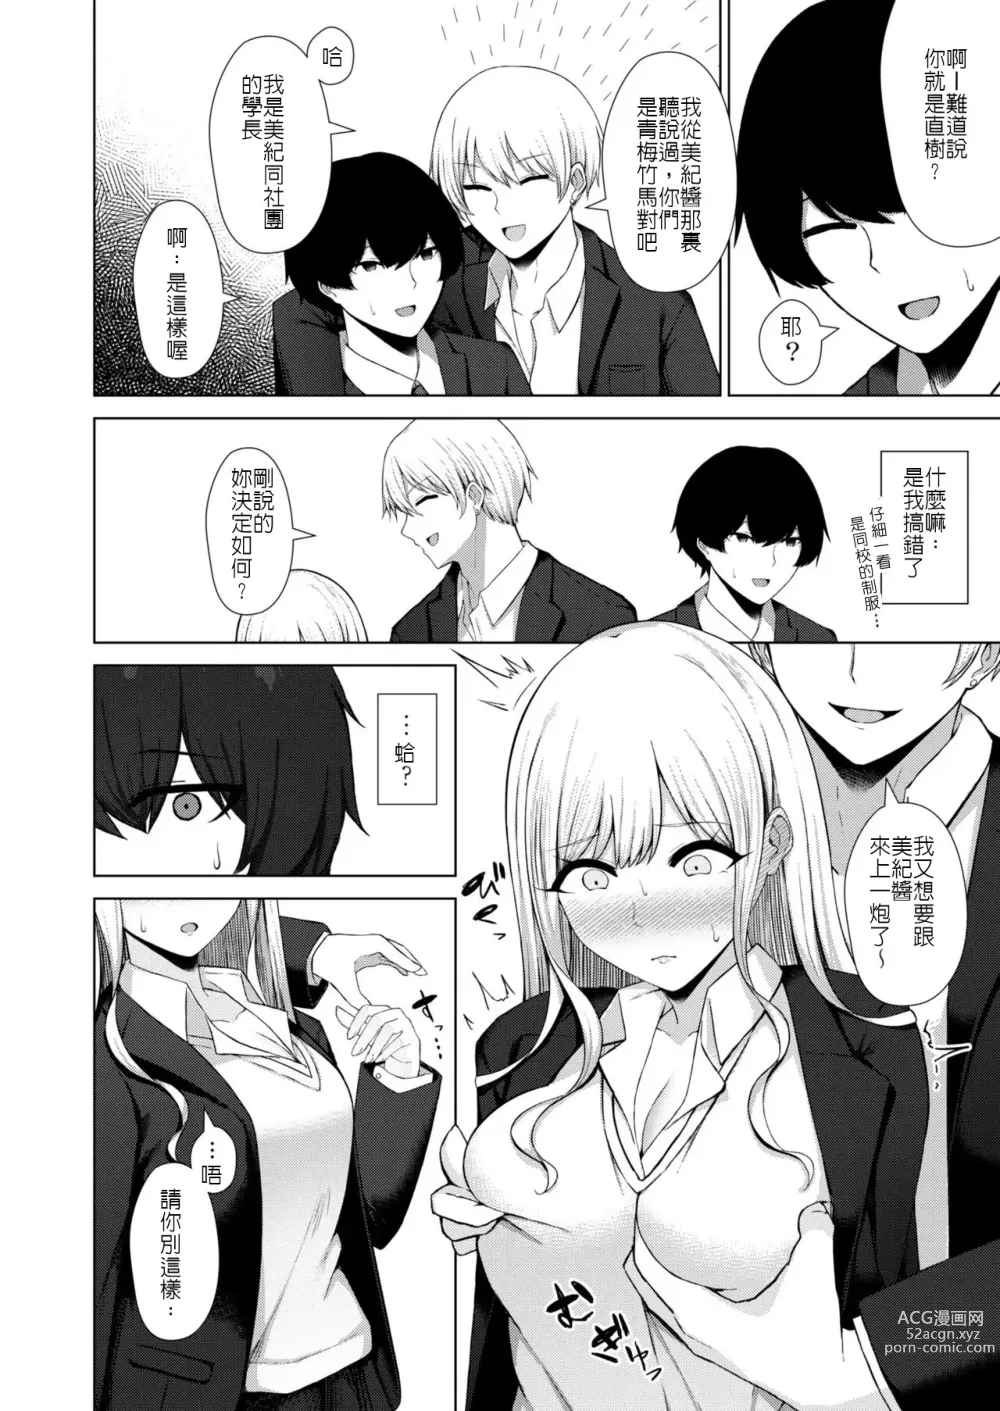 Page 6 of manga Osananajimi BSS -Nagasare Sokuochi Rankou-